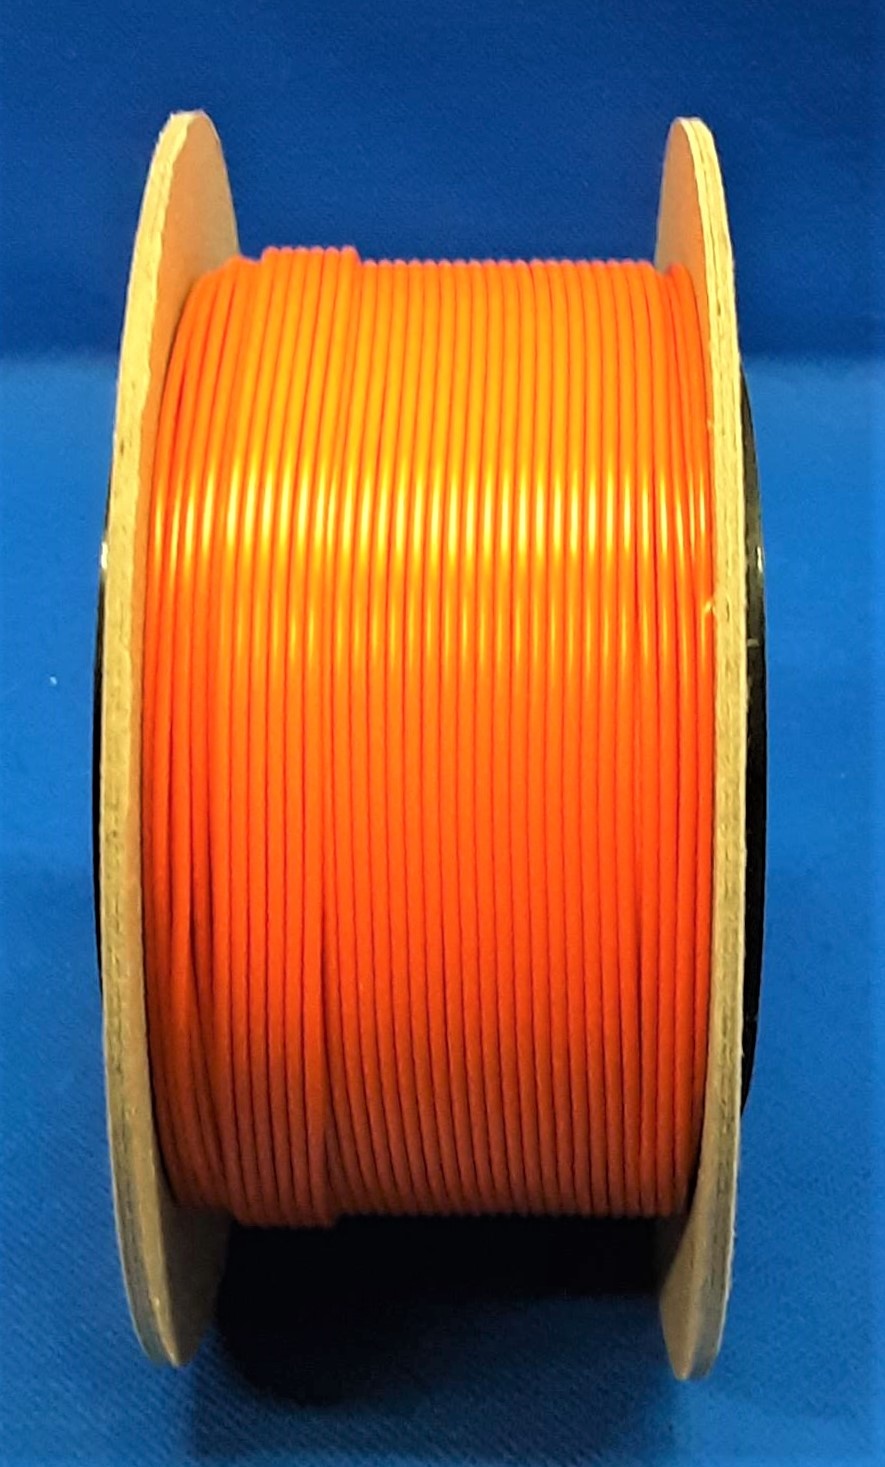 FLRY-B kabel 1,5mm - voertuigkabel - 50 meter - kleur Oranje 